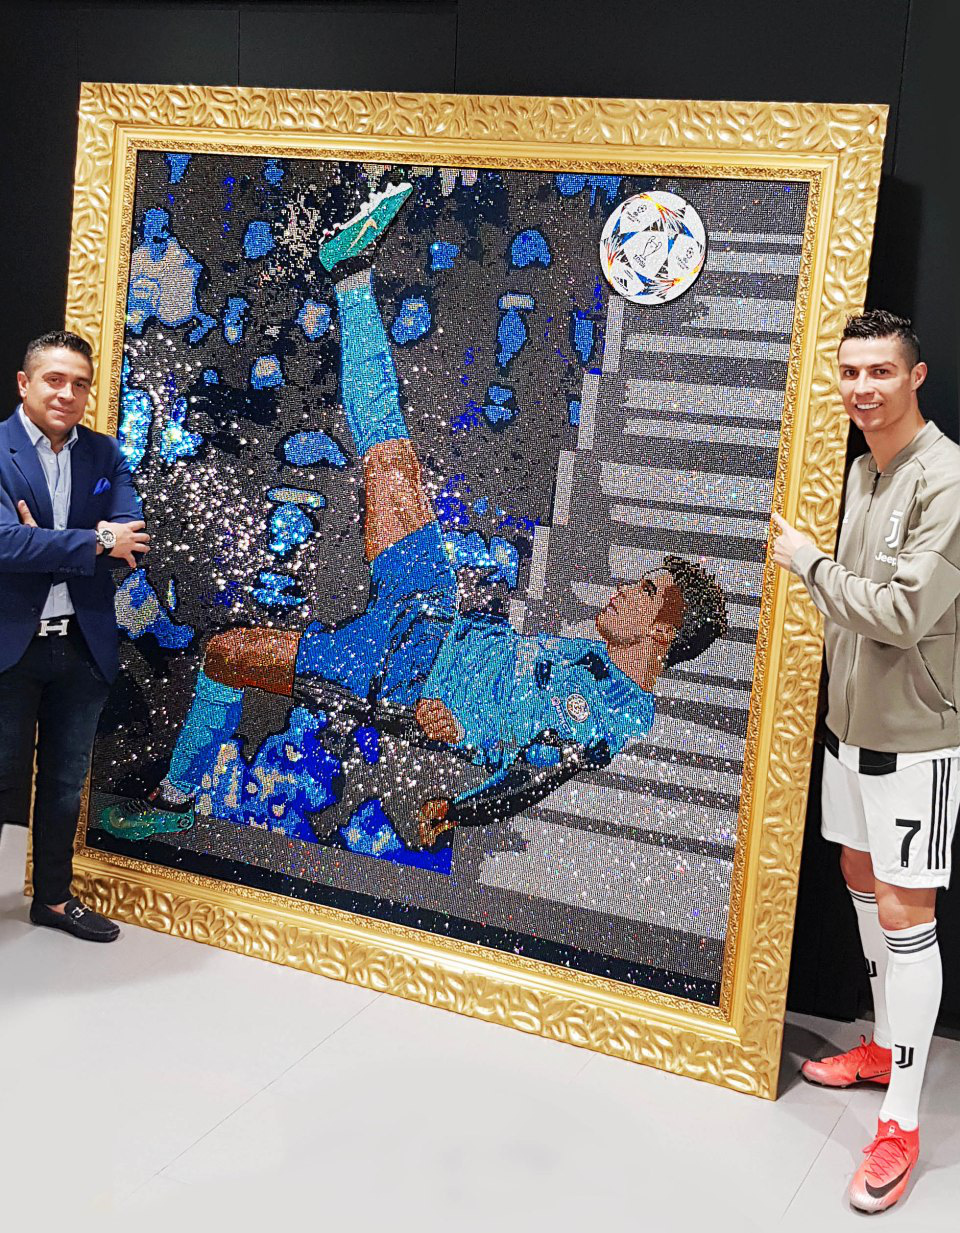 Gặp gỡ Mr Bling, nghệ nhân tranh đá quý Swarovski mê hoặc cả Messi, Ronaldo và Neymar - Ảnh 2.